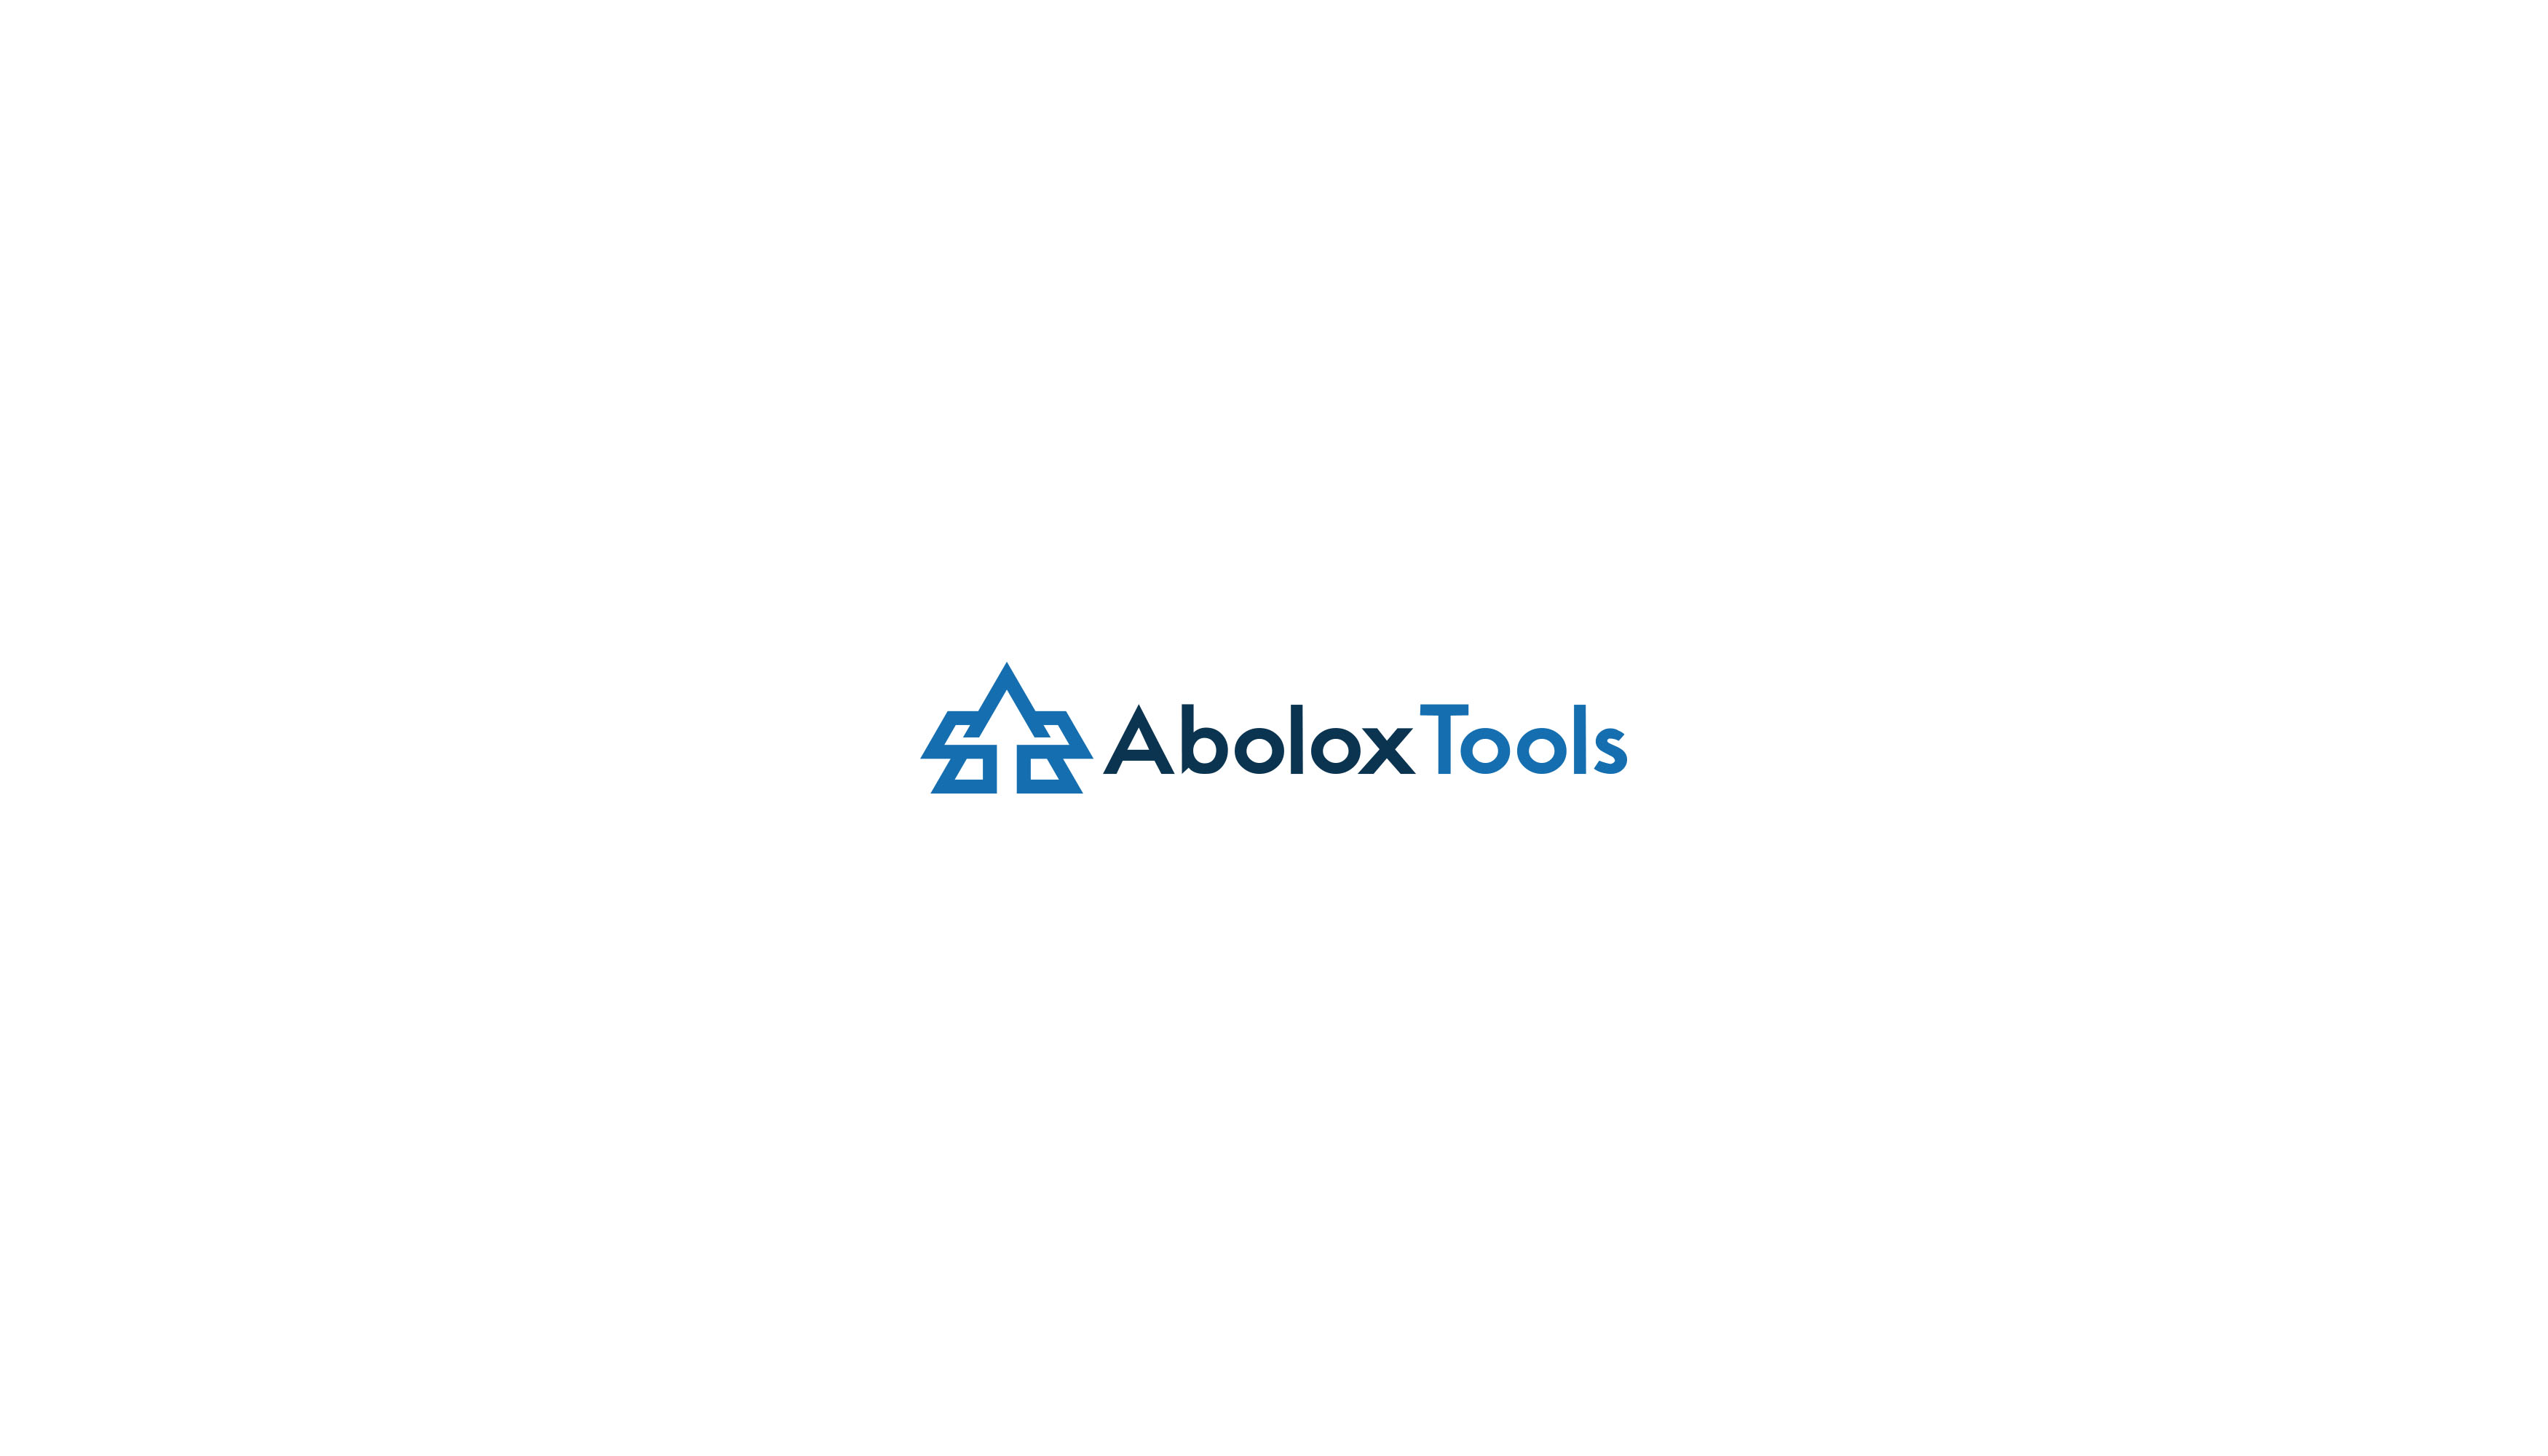 Abolox Tools Design #4